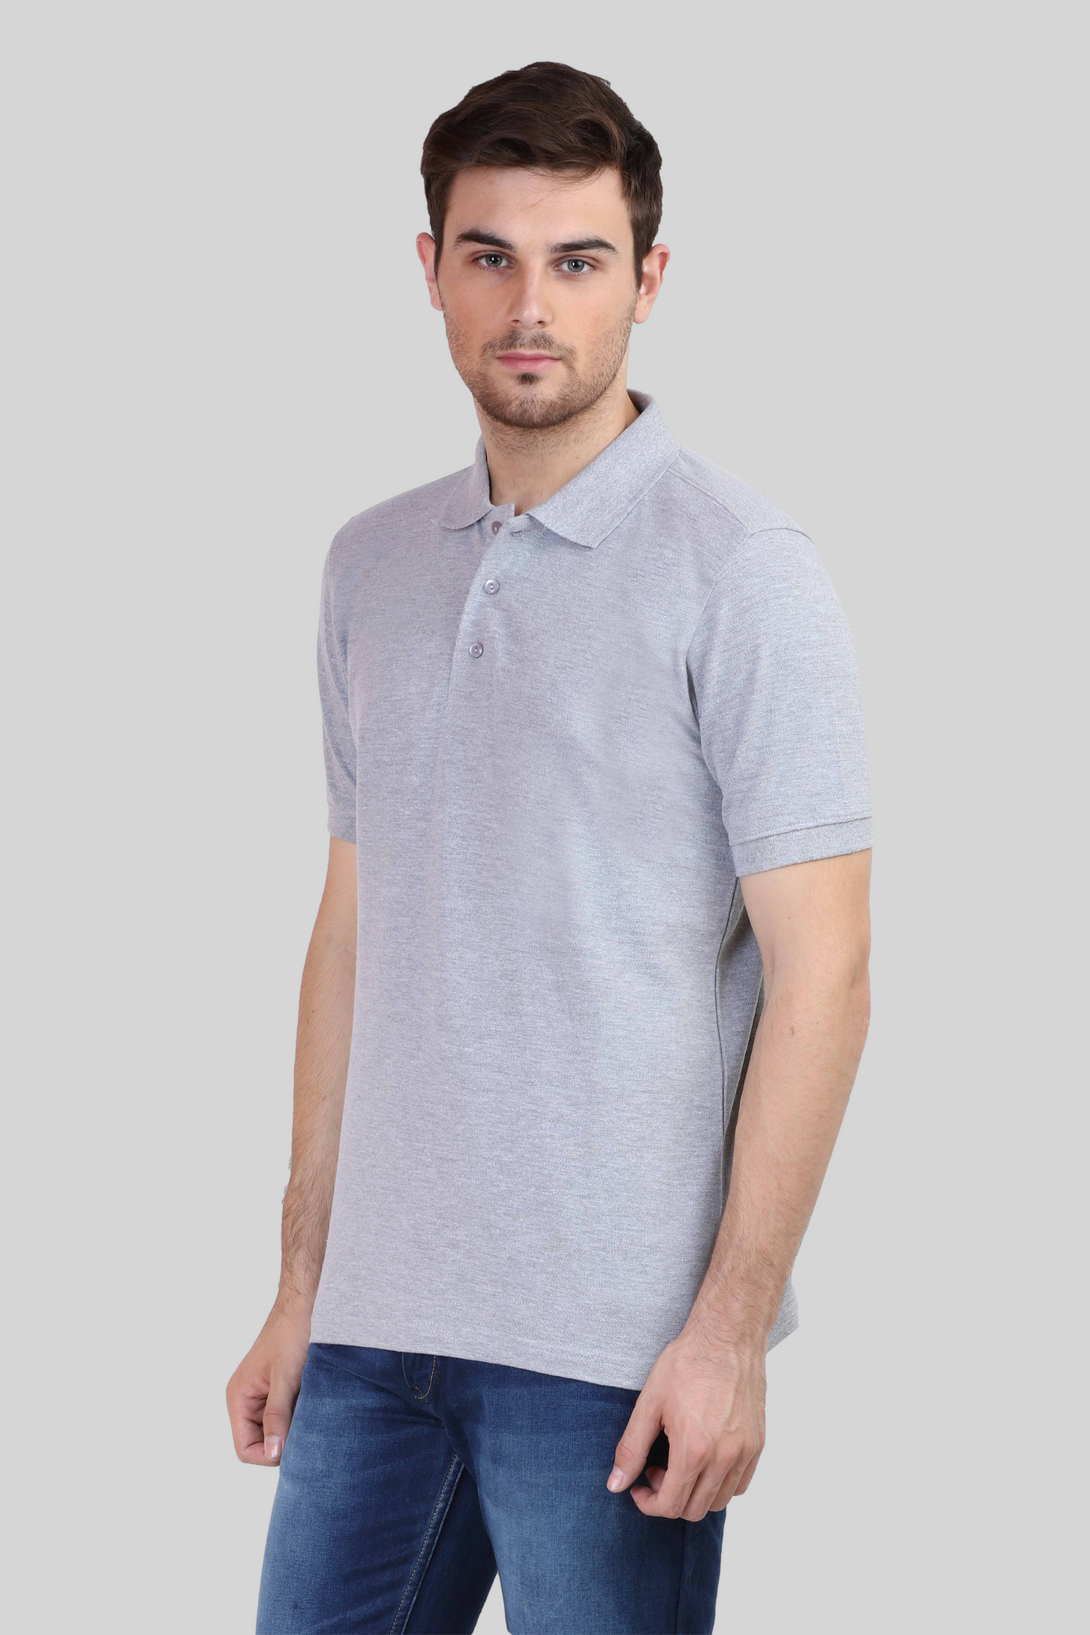 Grey Melange Polo T-Shirt For Men - WowWaves - 7